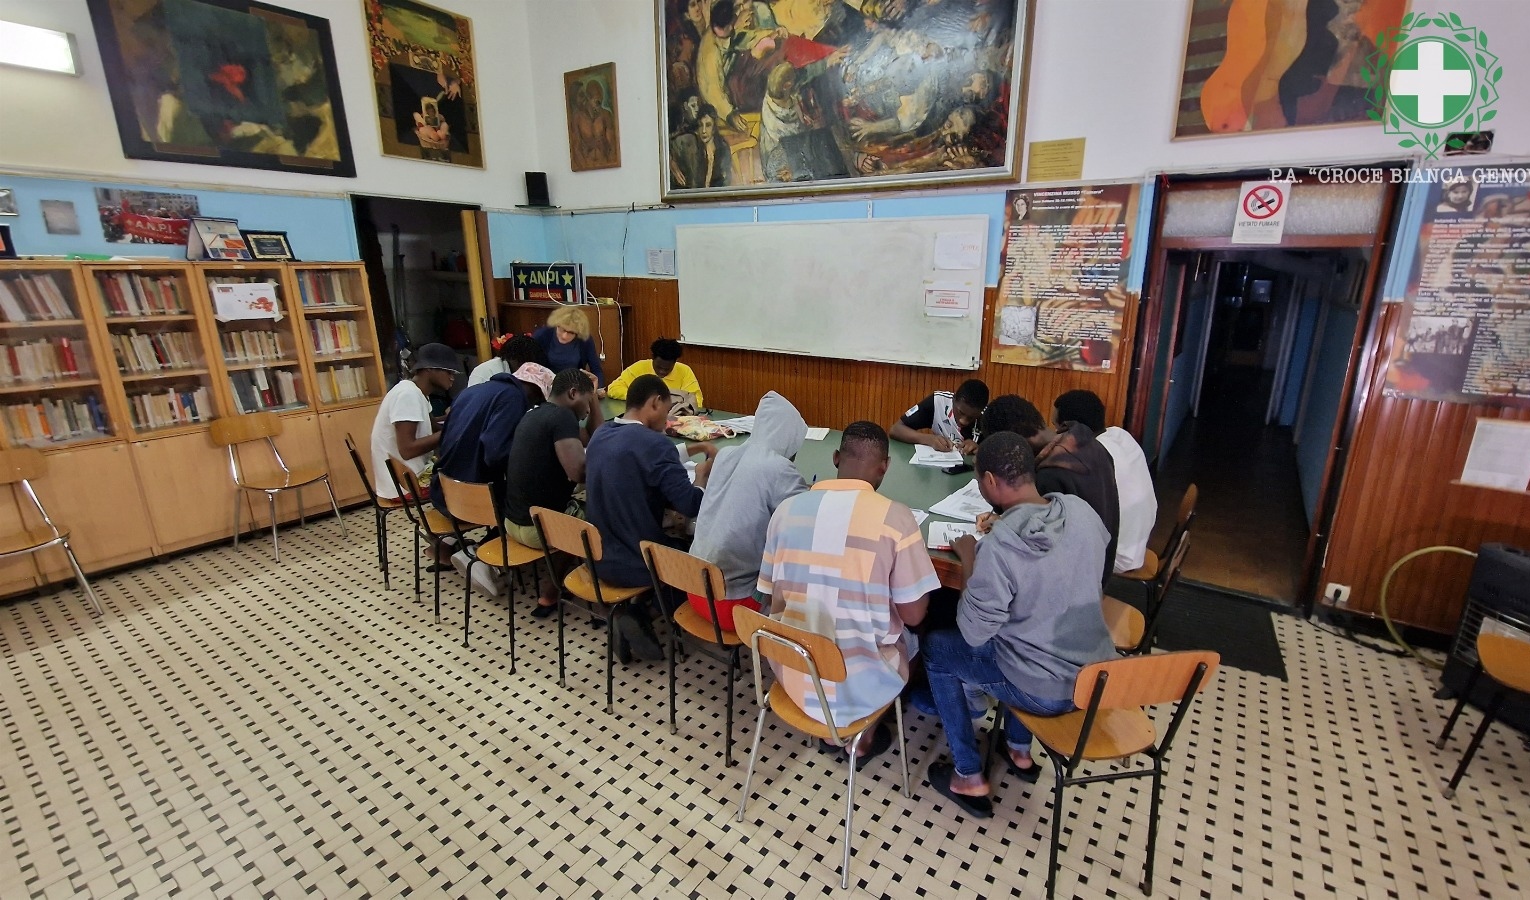 Migranti a Genova, parte corso di meccatronica per 18 ragazzi africani